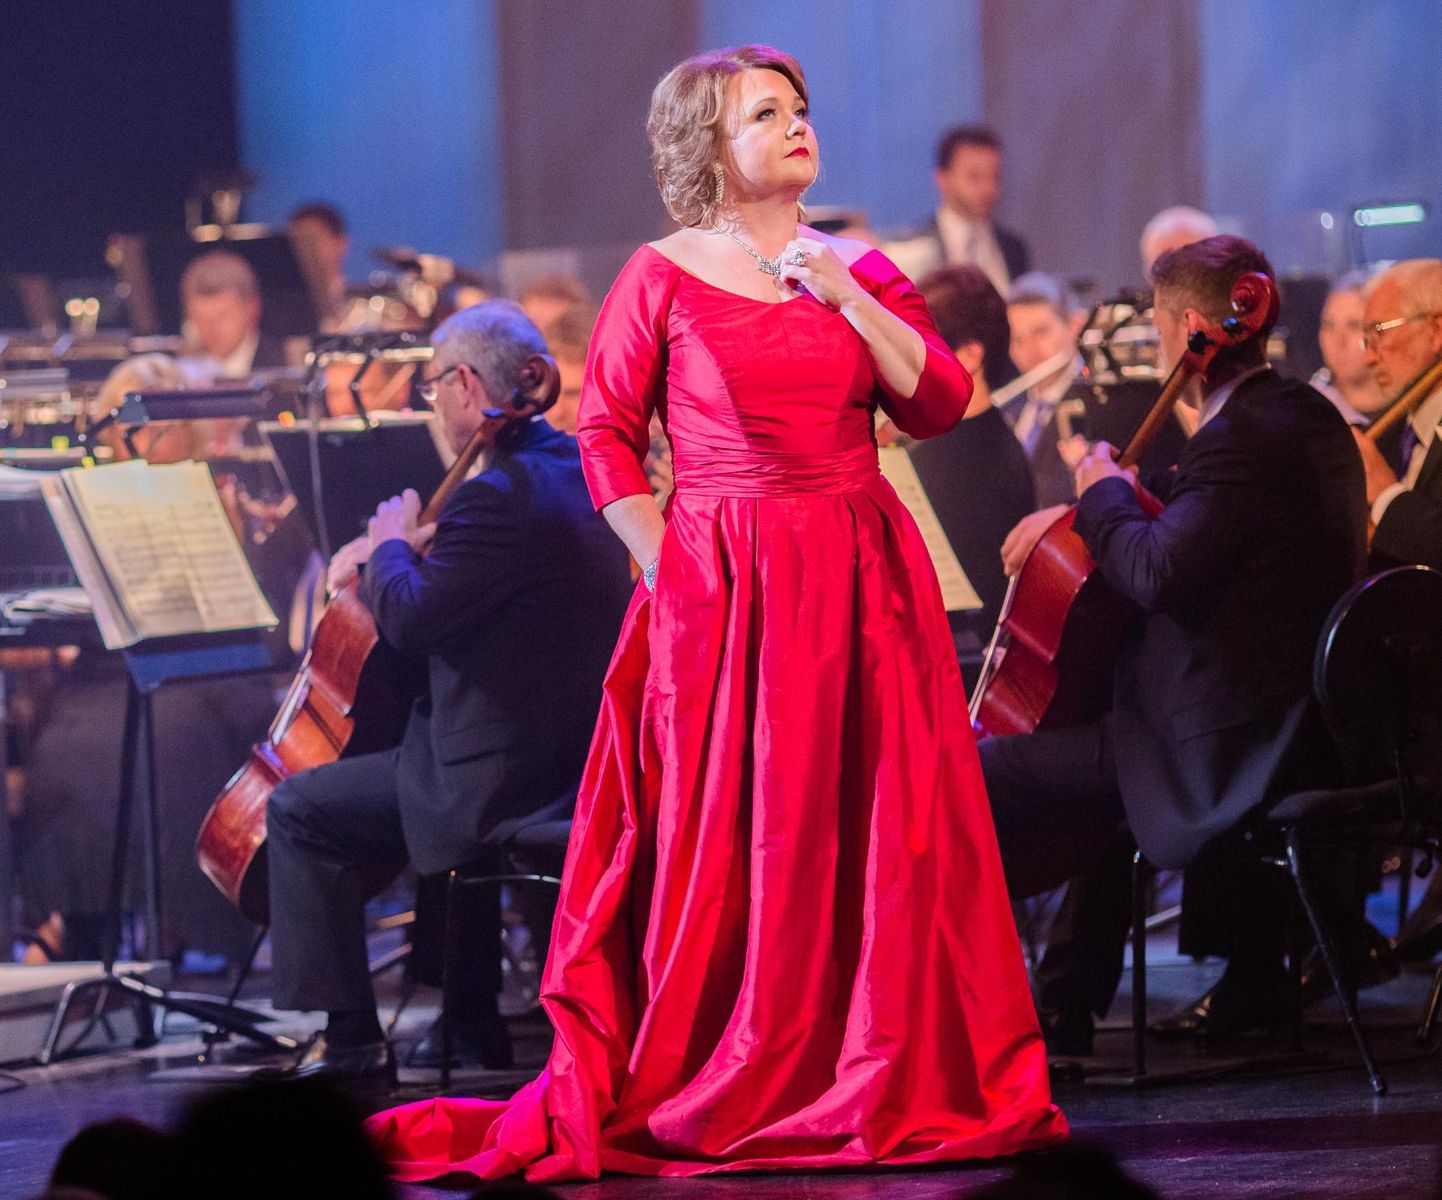 Rahvusooper Estonia sopran Heli Veskus esineb kammerkontsertide sarja avakontserdil.